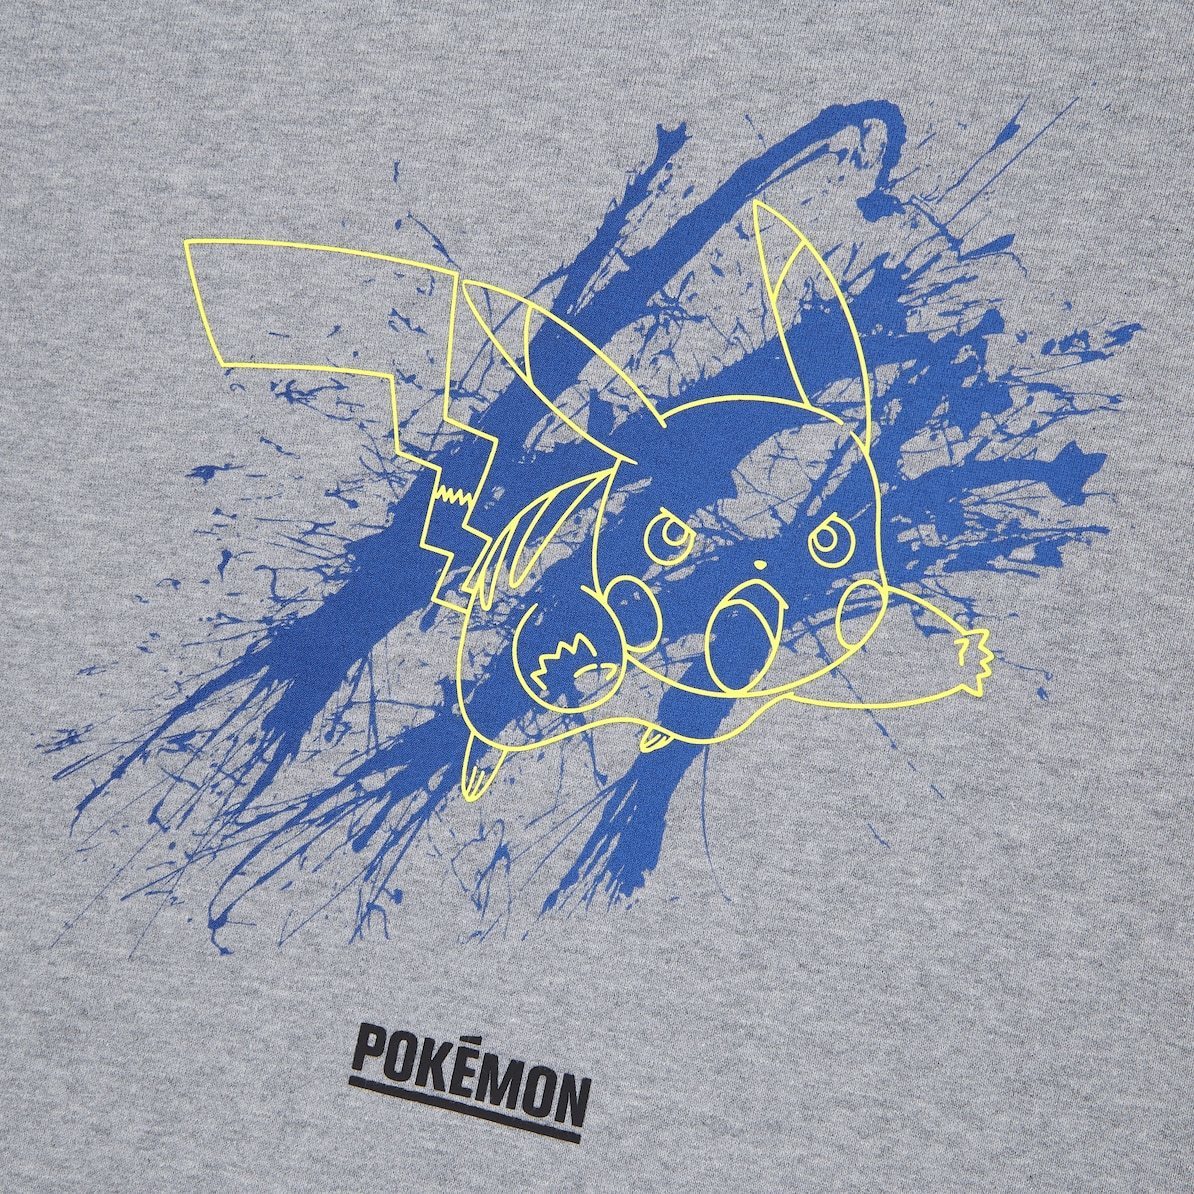 UNIQLO(ユニクロ) - Pokemon Meets Artist ポケモン ミーツ アーティスト スウェットシャツ ピカチュウ Pikachu (新品タグき未着用品)_画像2